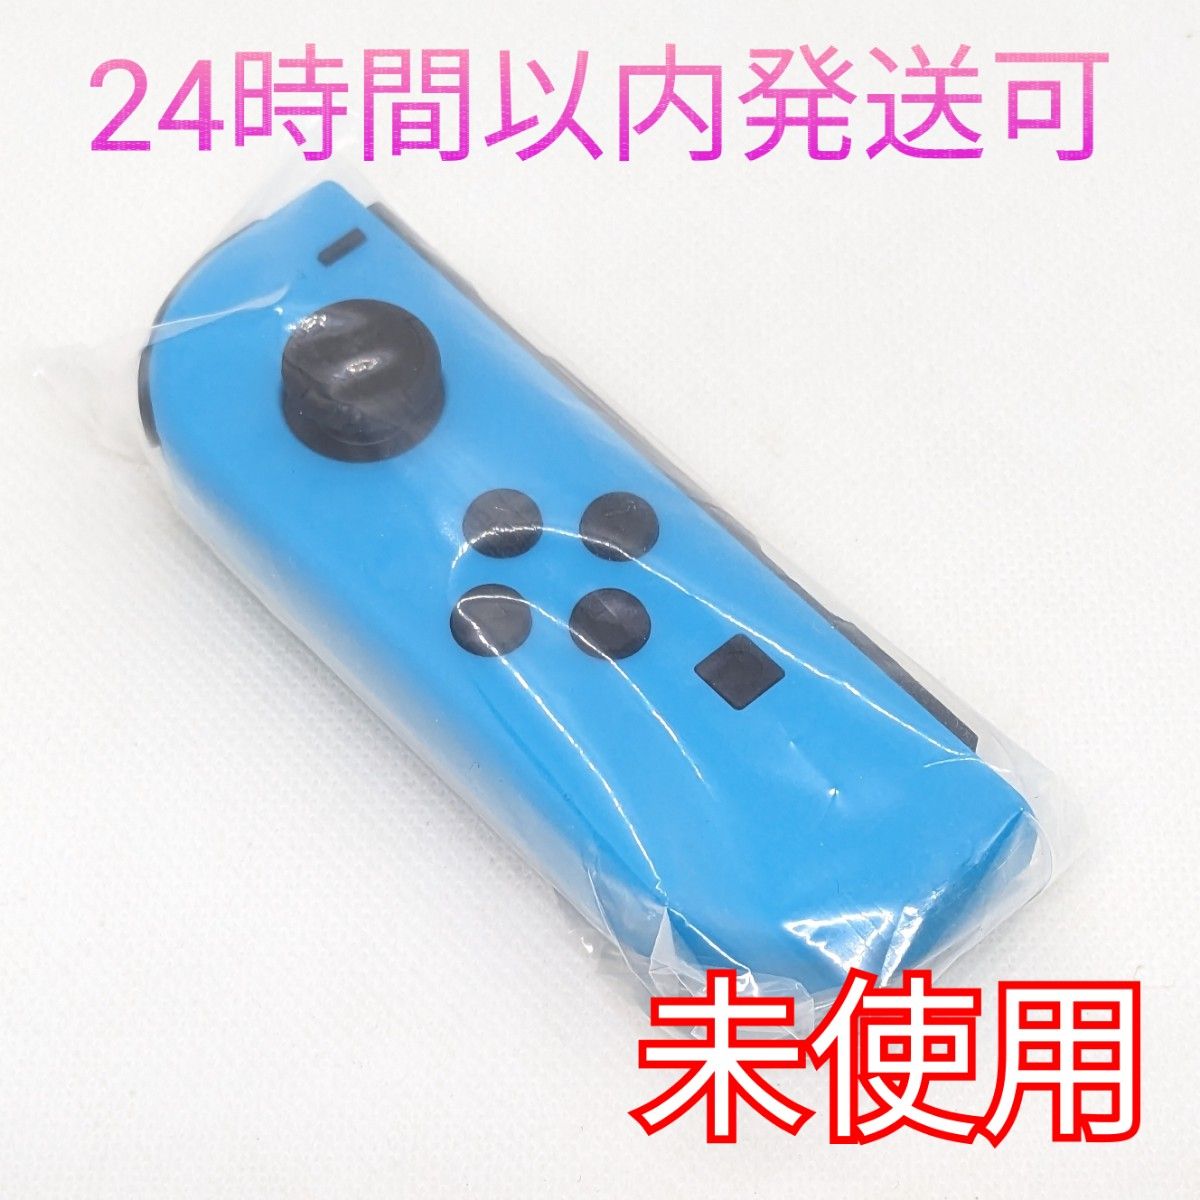 【未使用】Nintendo Switch ジョイコン ネオンブルー L 左 ニンテンドースイッチ Joy-Con